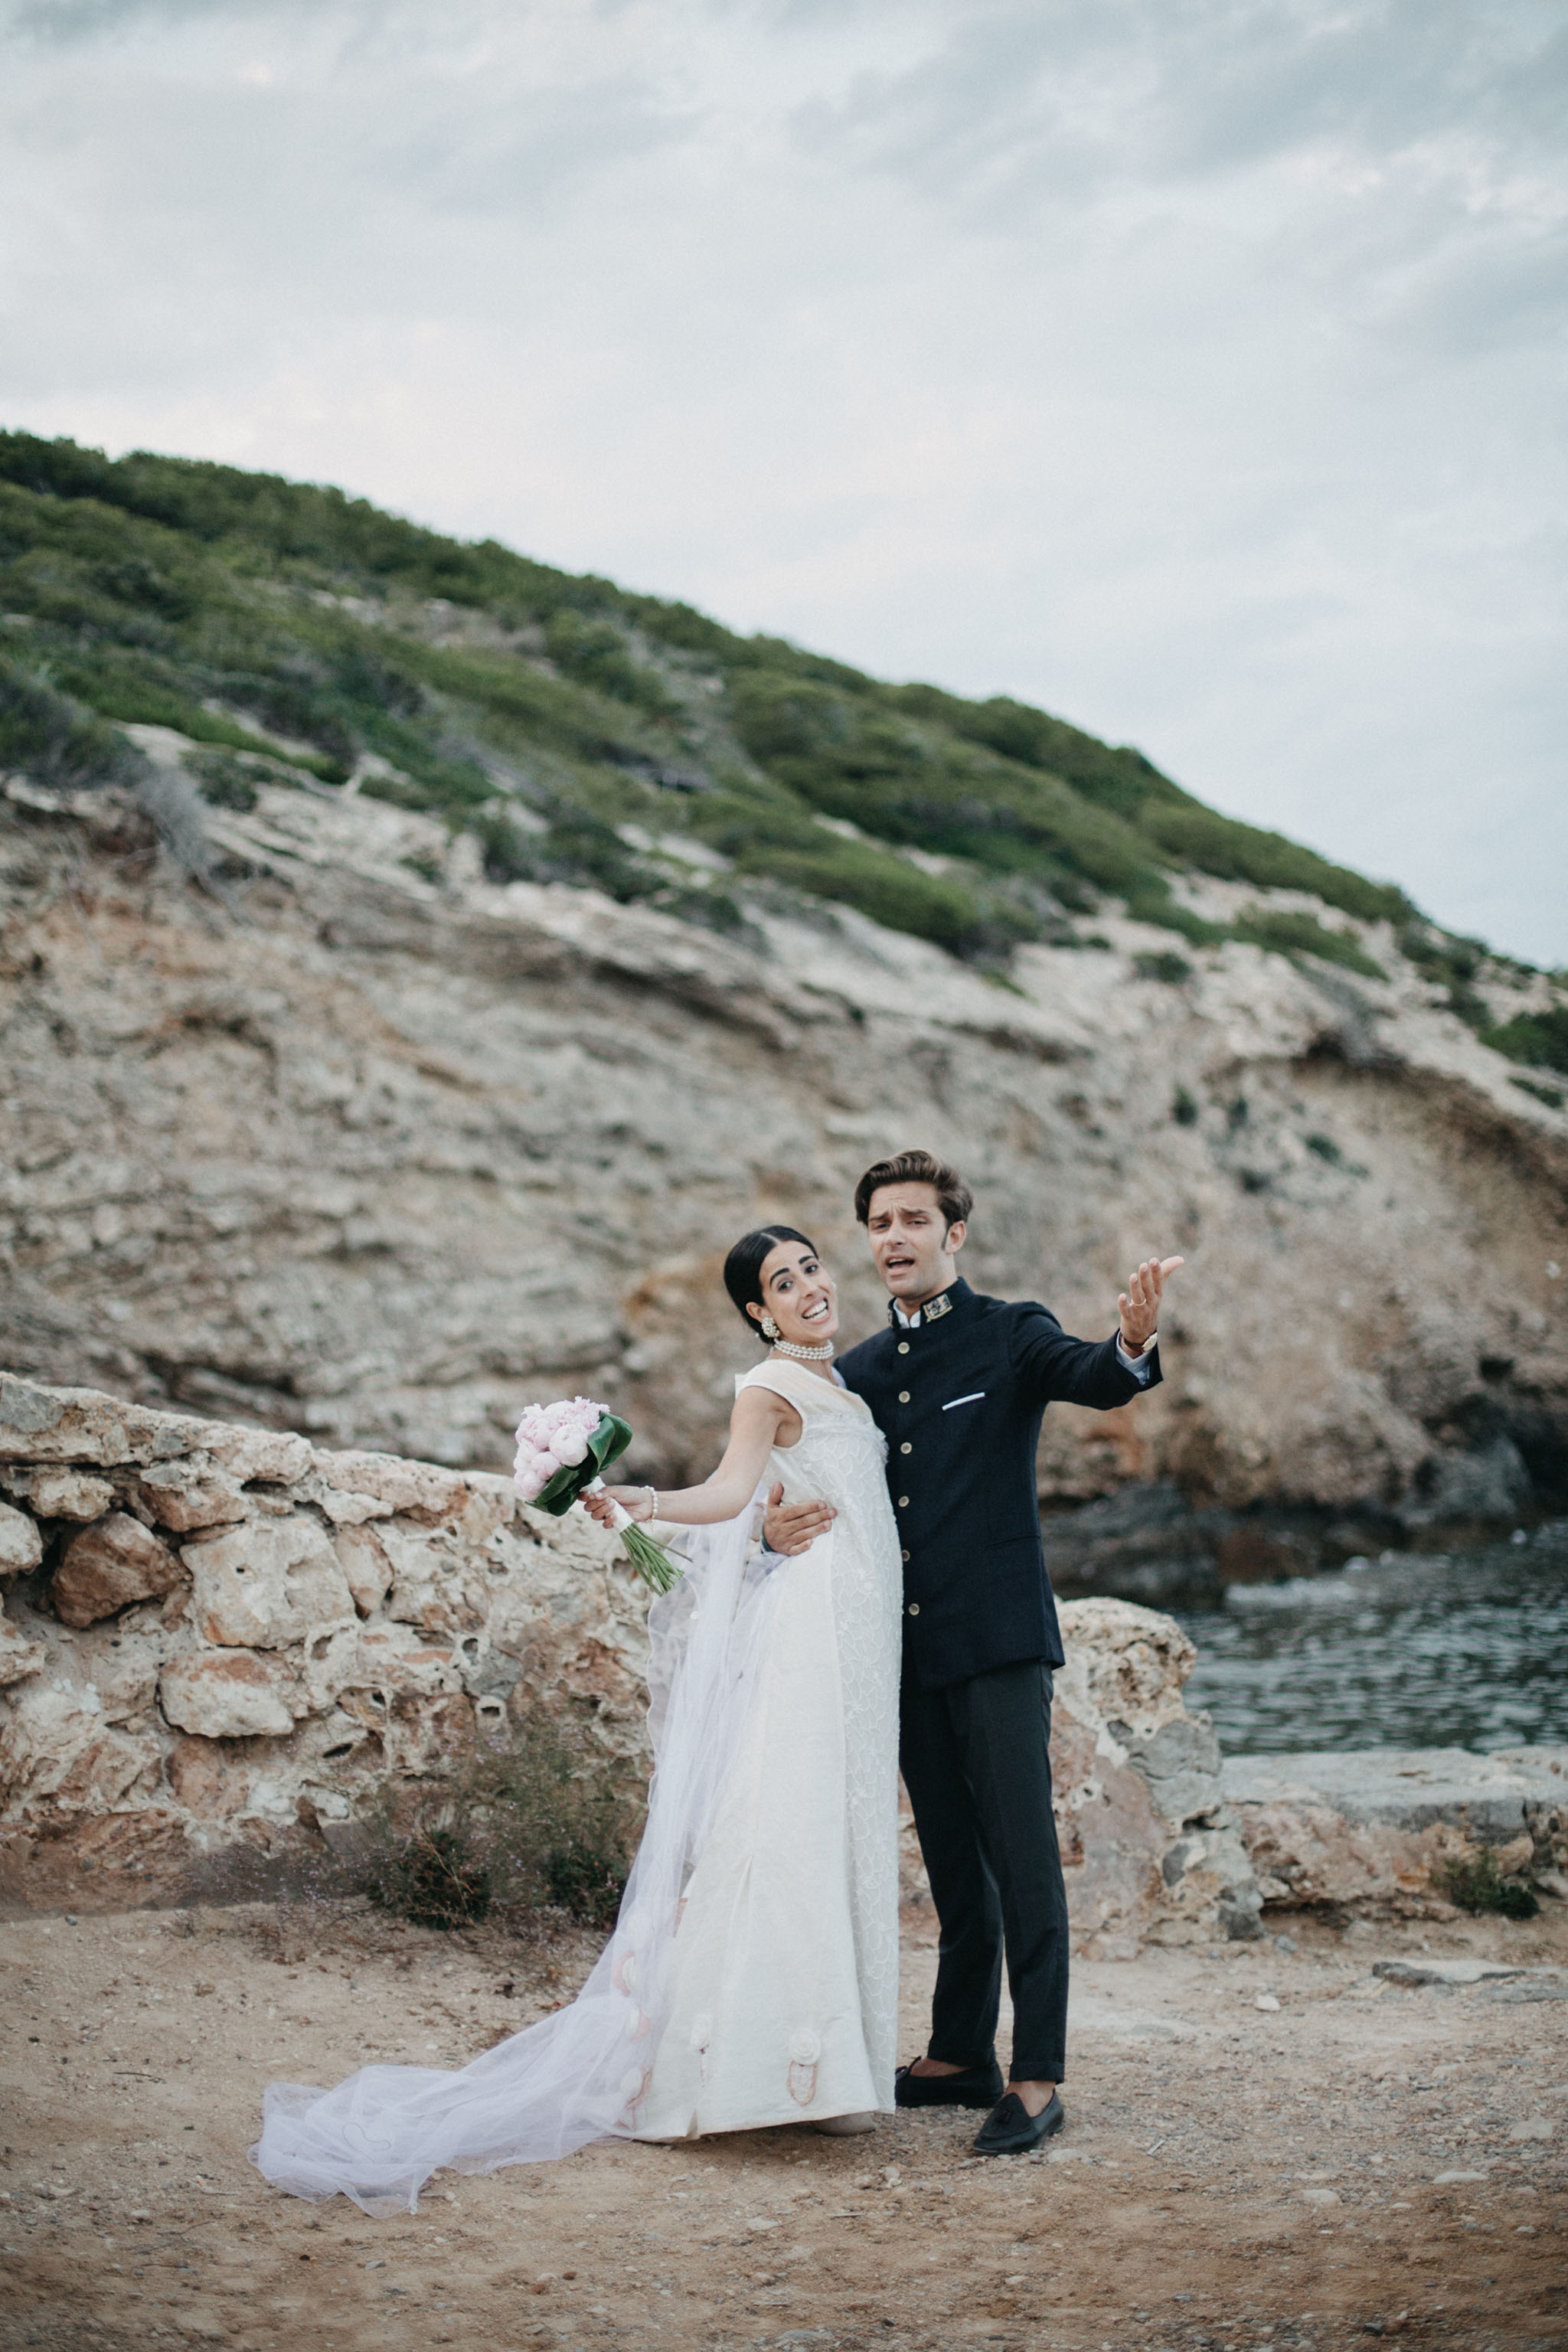 An Italian Summer Wedding in Ibiza - Over The Moon